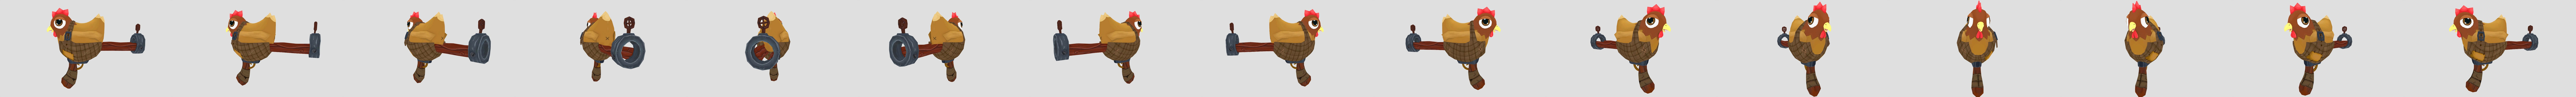 Chicken Gun - 3D model by Meri L. (@azurehusky) [3a91fd9]